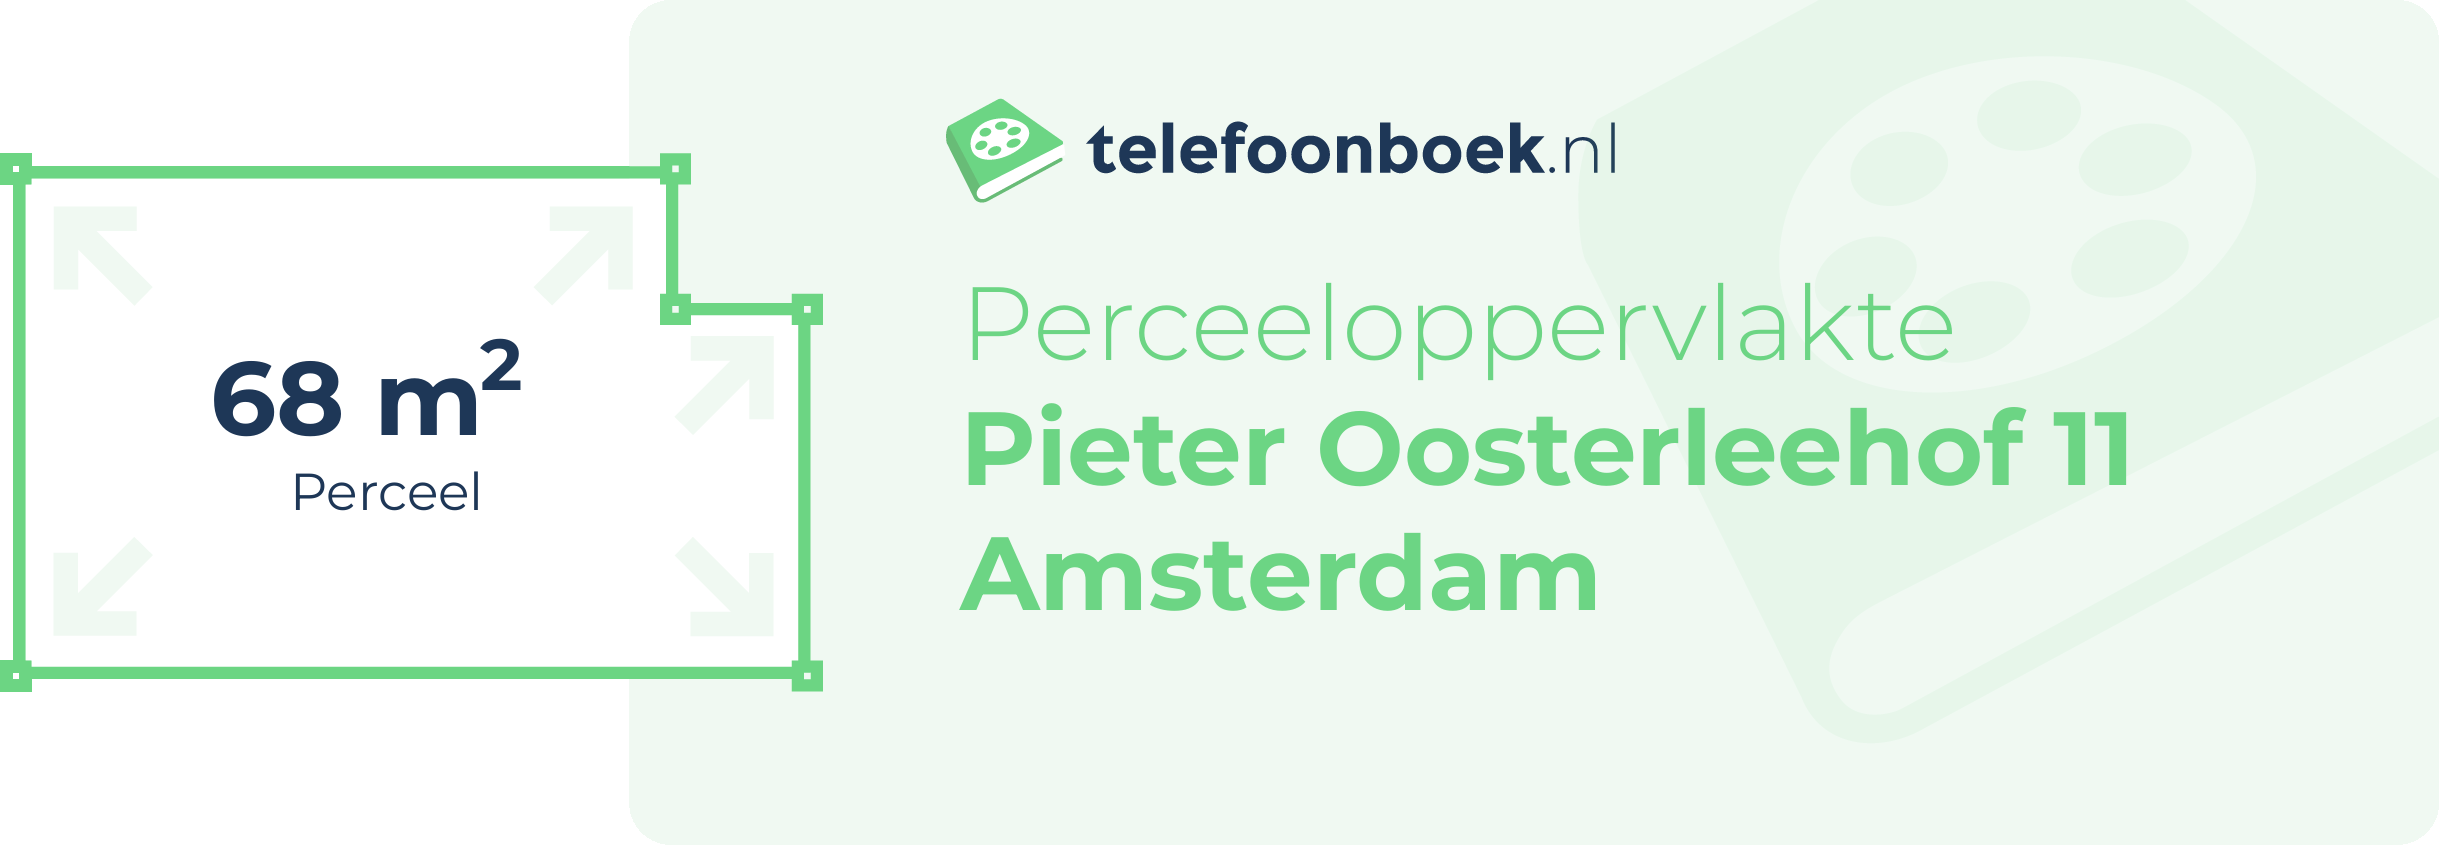 Perceeloppervlakte Pieter Oosterleehof 11 Amsterdam